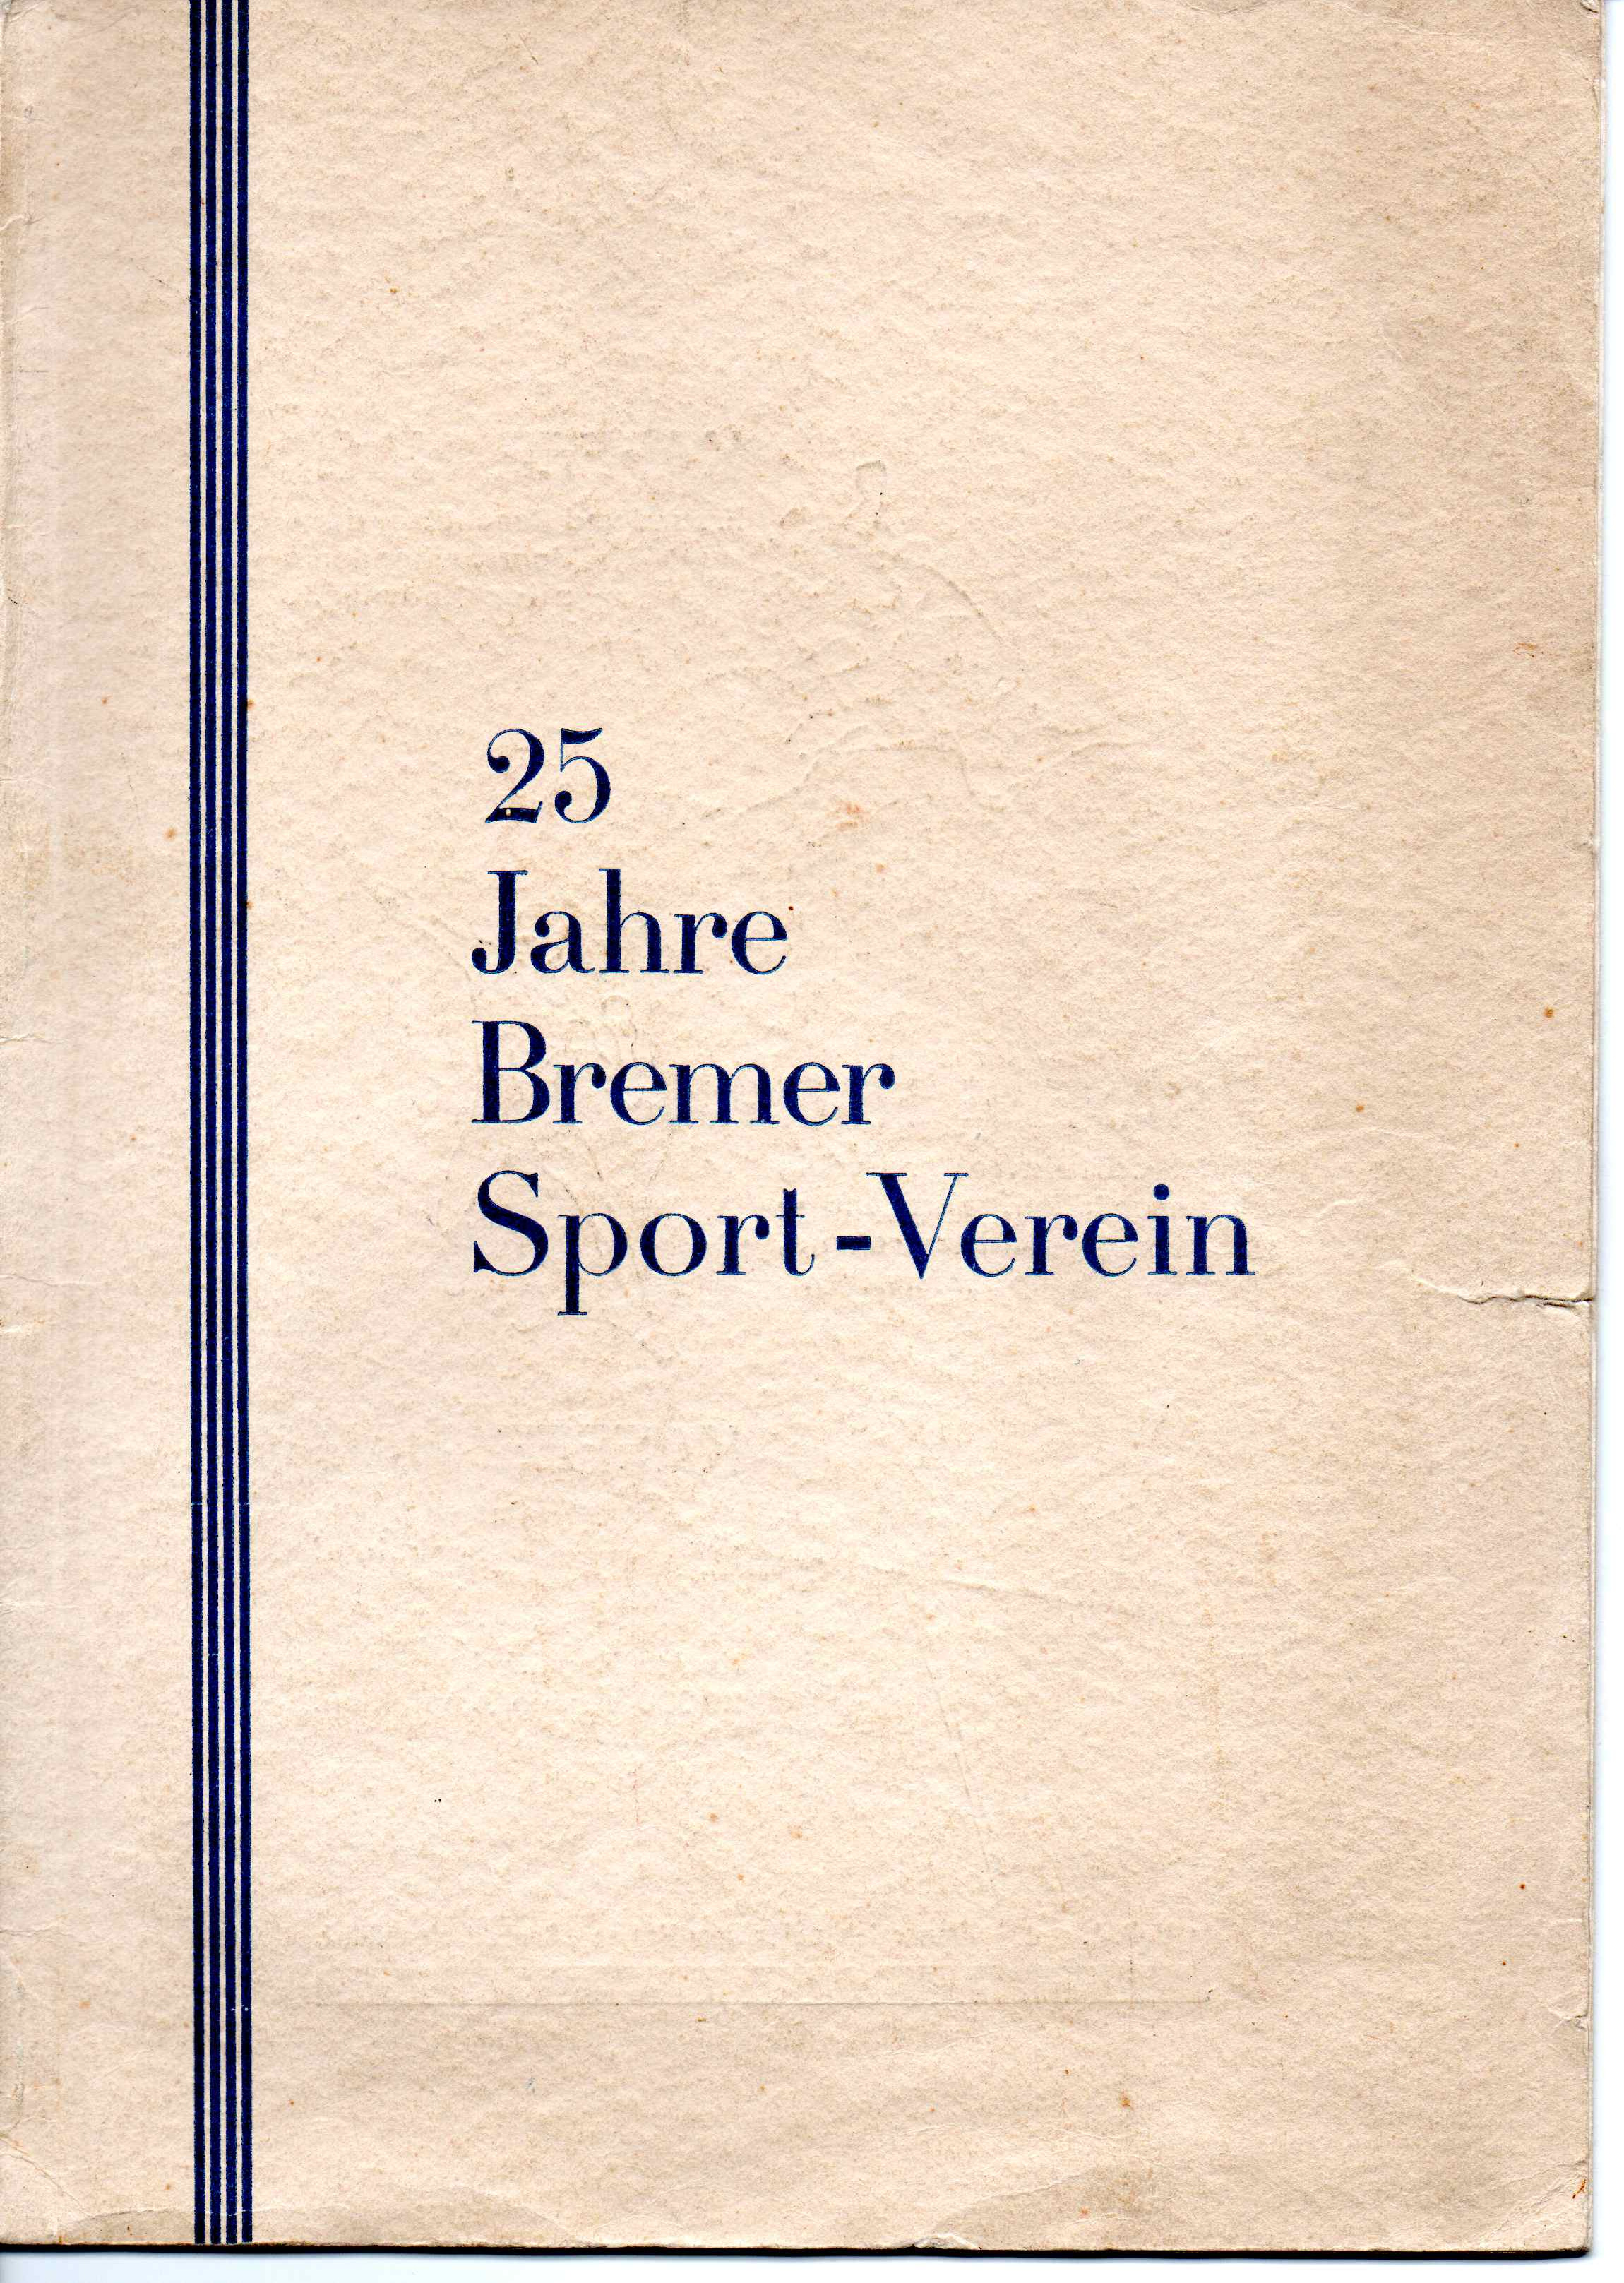 25 Jahre Bremer Sport-Verein